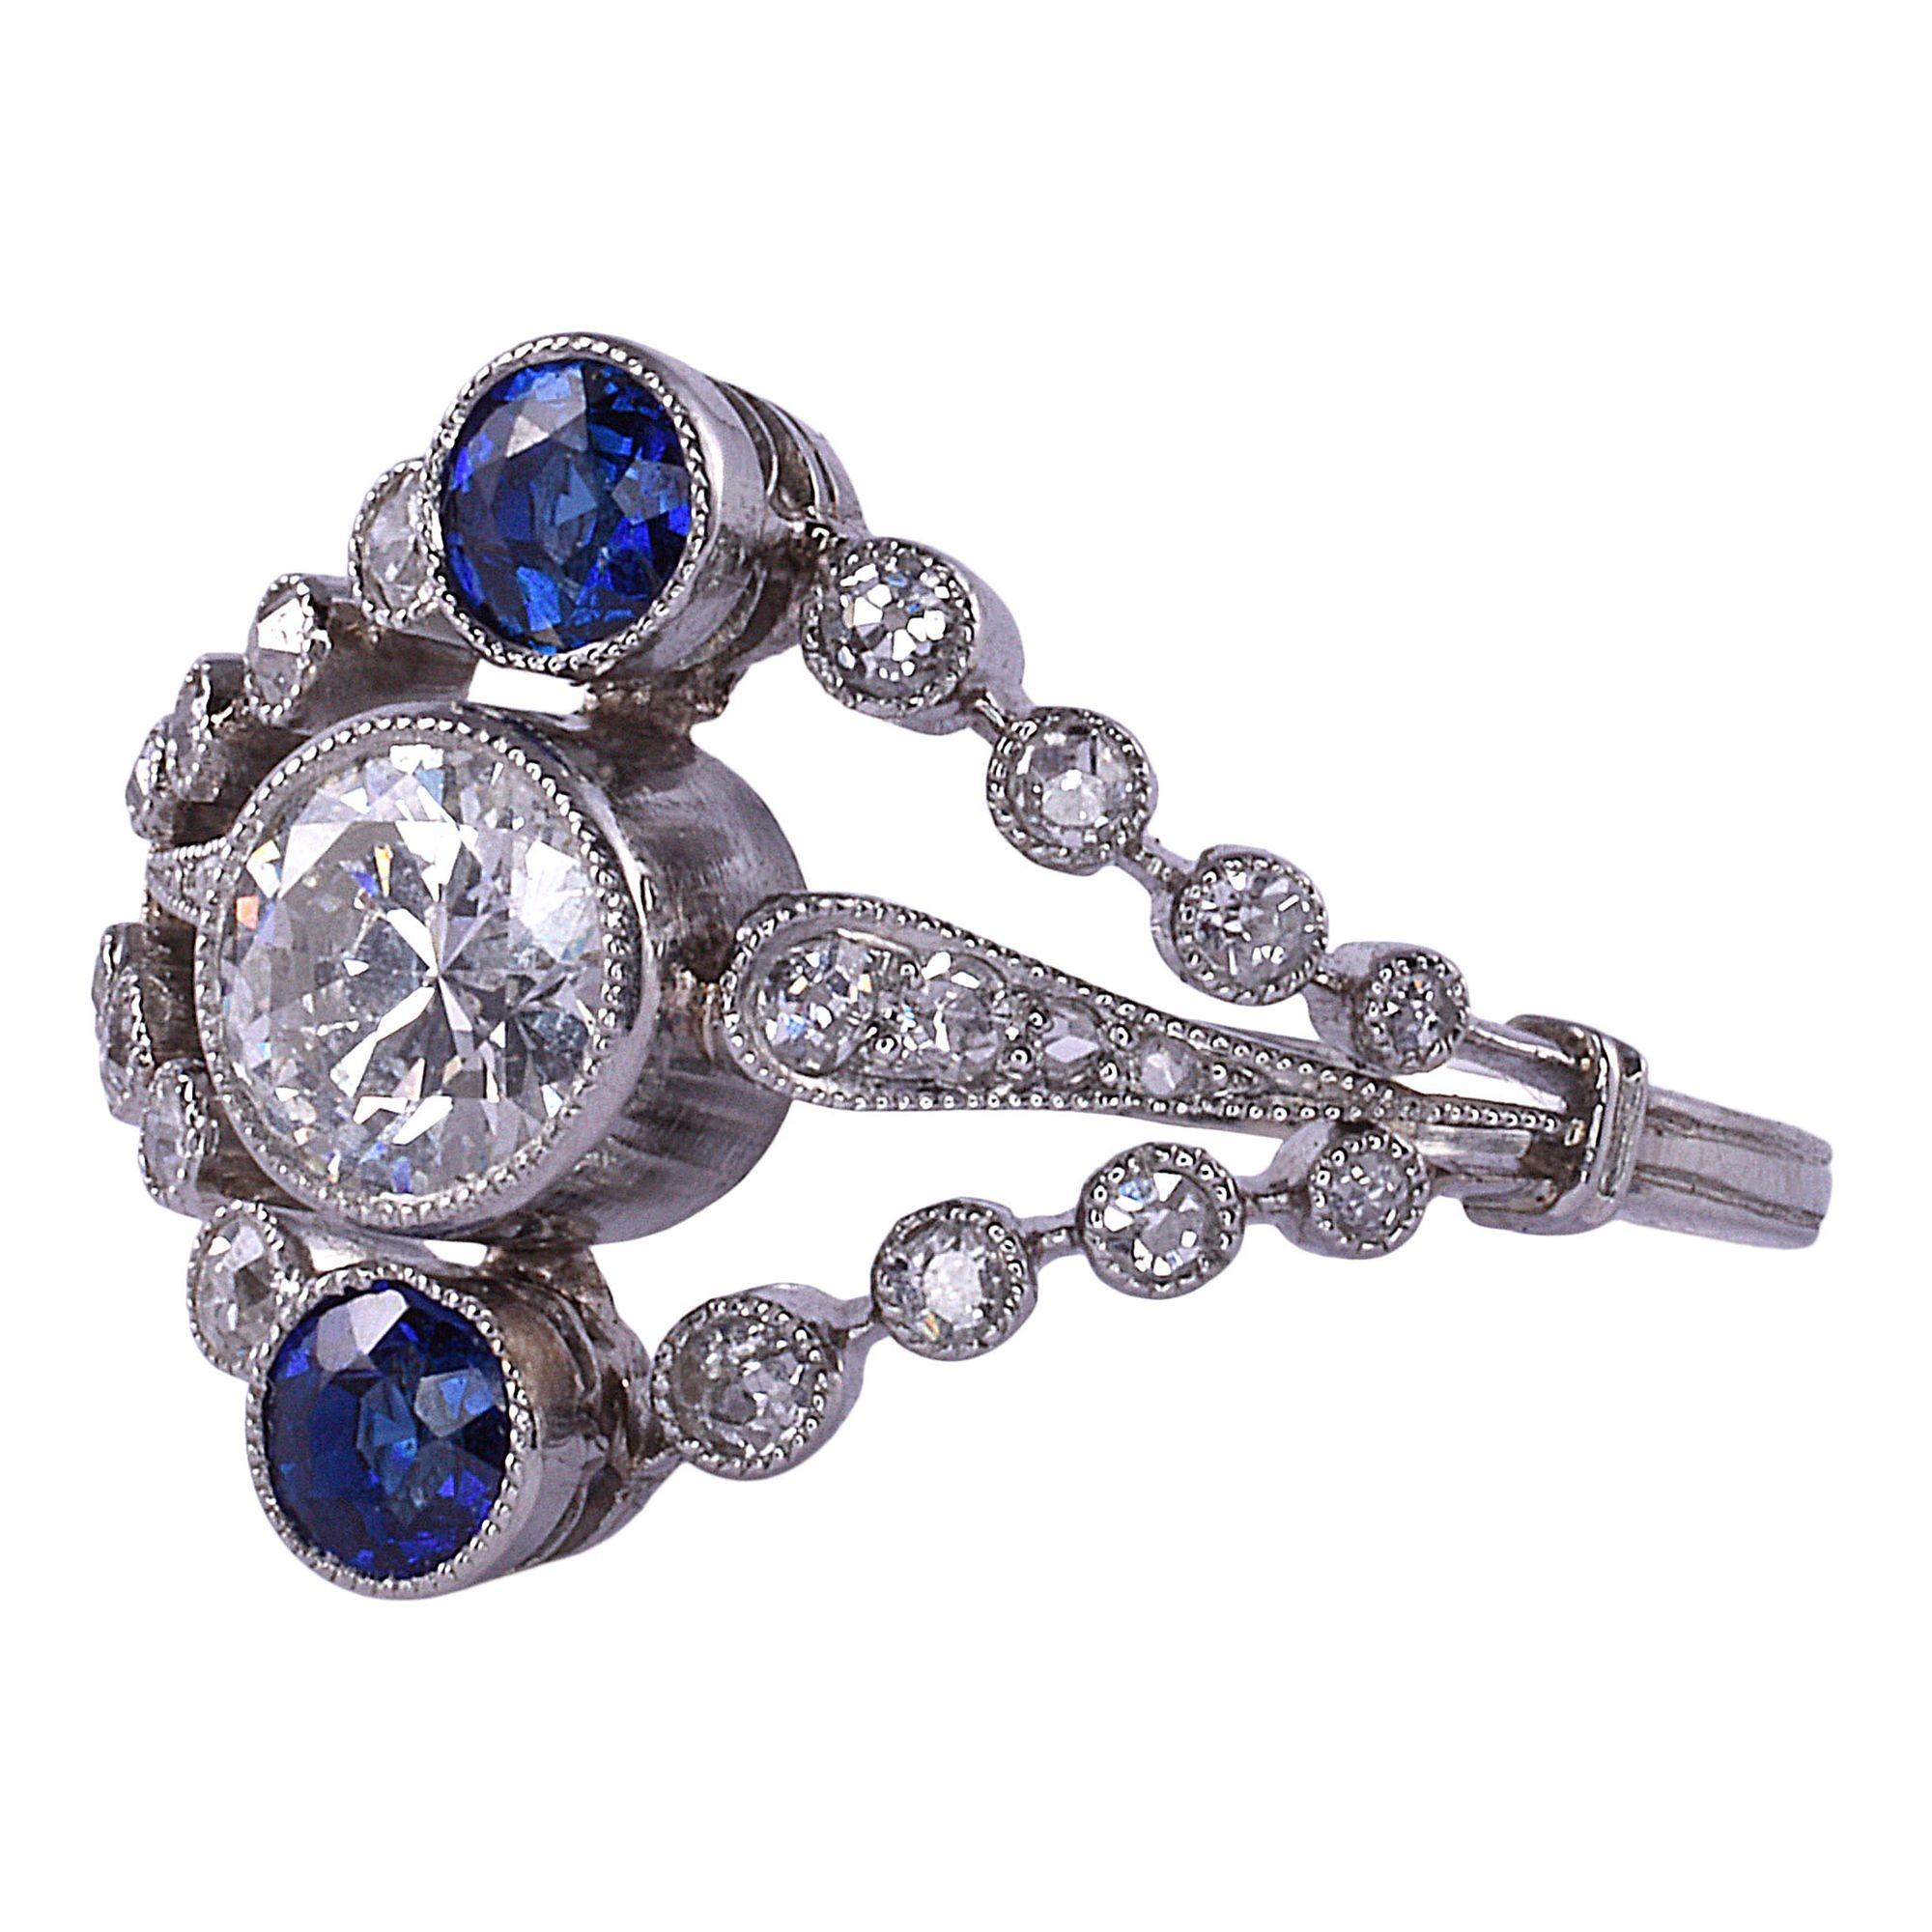 Antiker französischer edwardianischer Diamant- und Saphirring aus Platin, um 1910. Dieser edwardianische Ring ist aus Platin gefertigt und mit einem Diamanten von 0,50 Karat besetzt. Der mittlere Diamant hat die Reinheit VS2 und die Farbe I. Oben